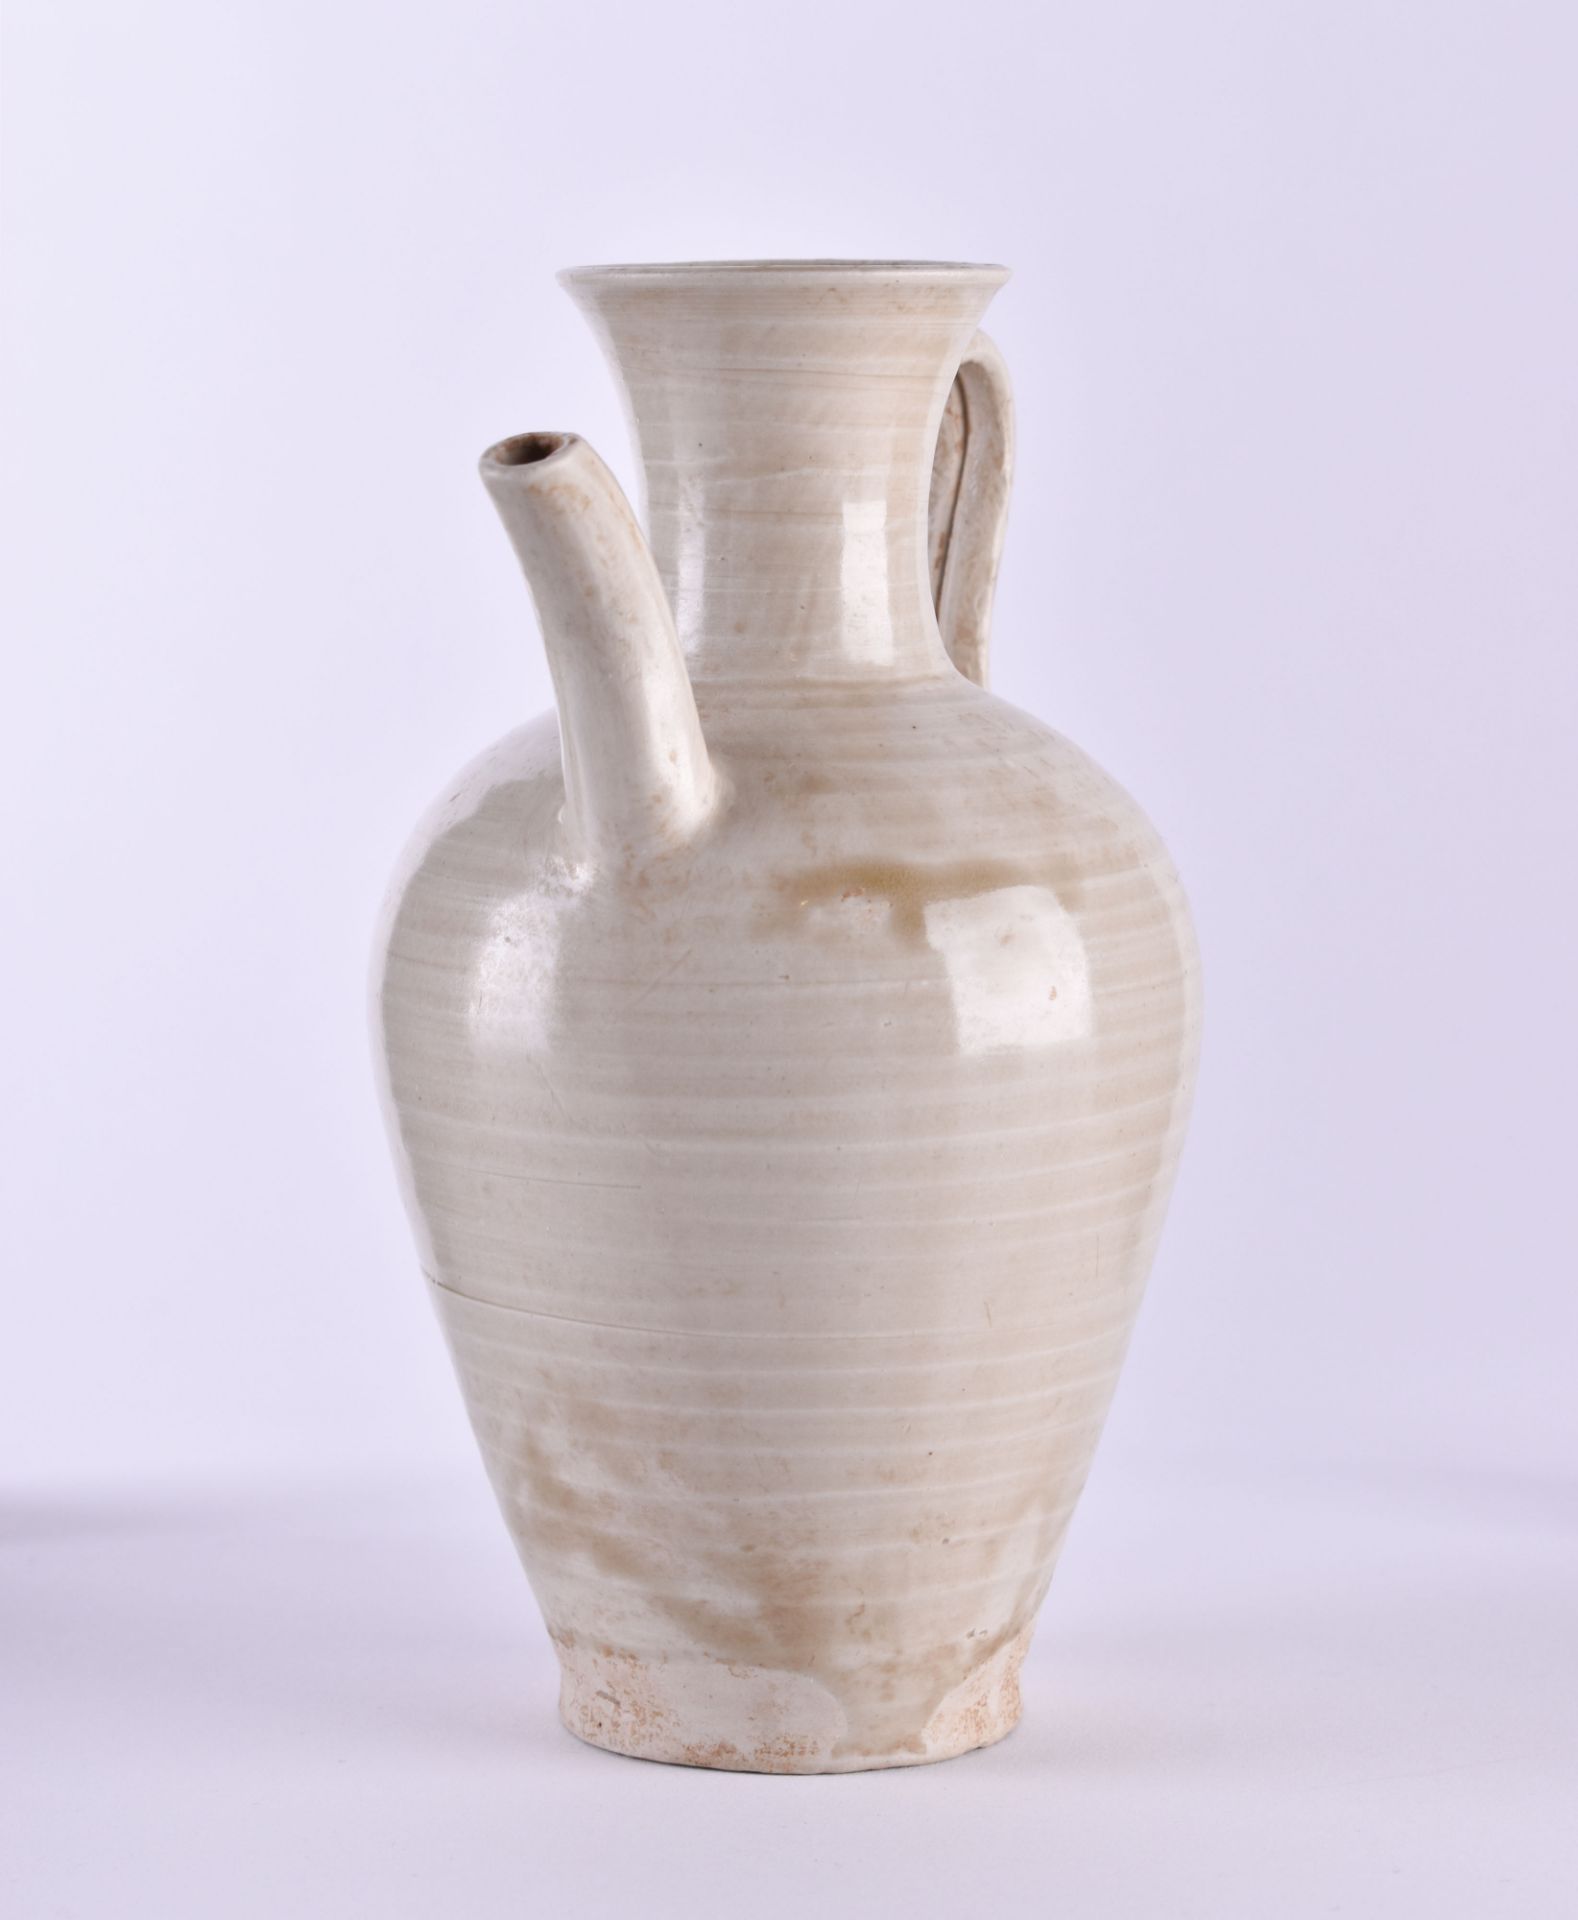 Oil jug China - Image 4 of 5